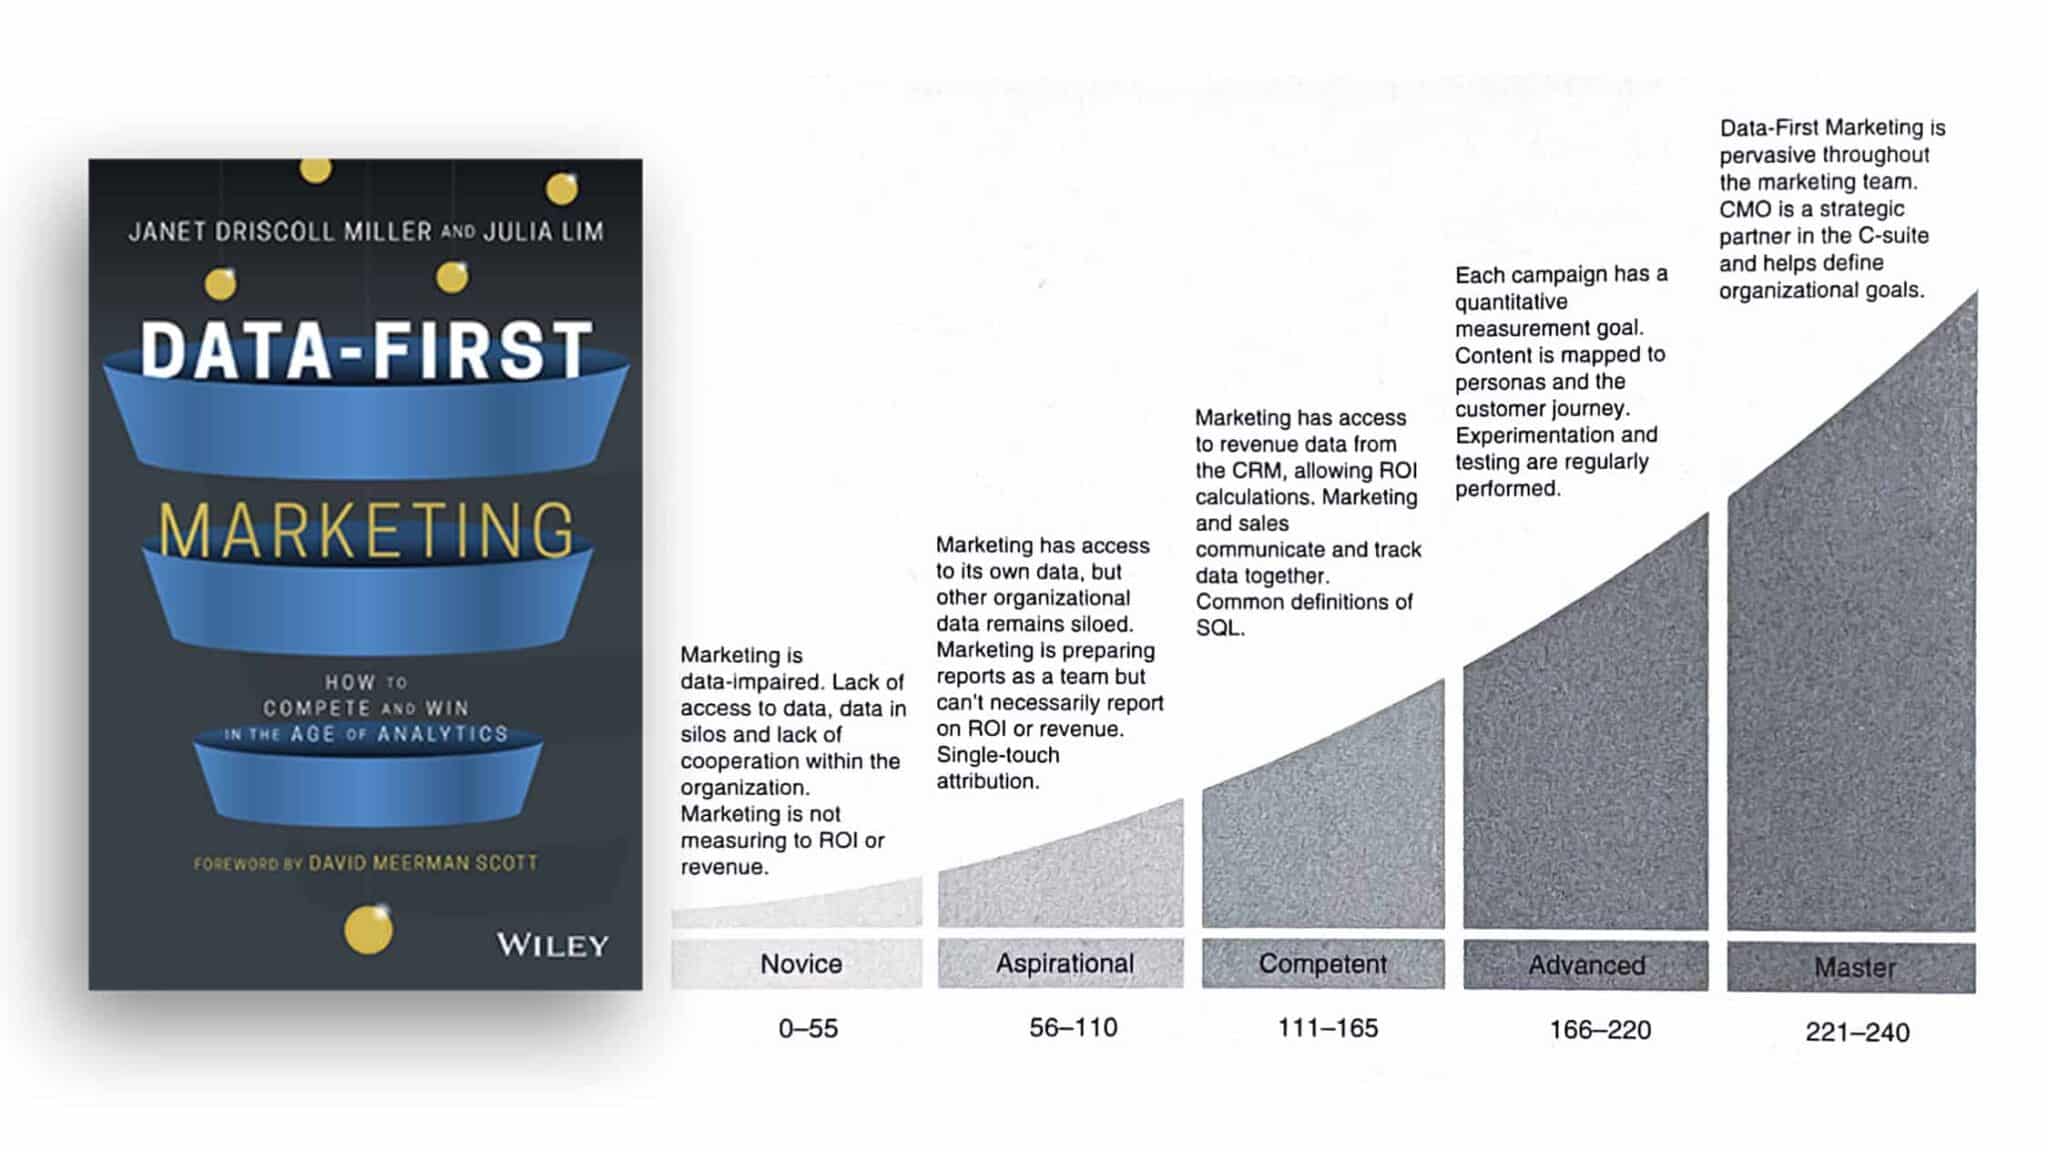 สรุปหนังสือ Data-First Marketing การตลาดจากดาต้า